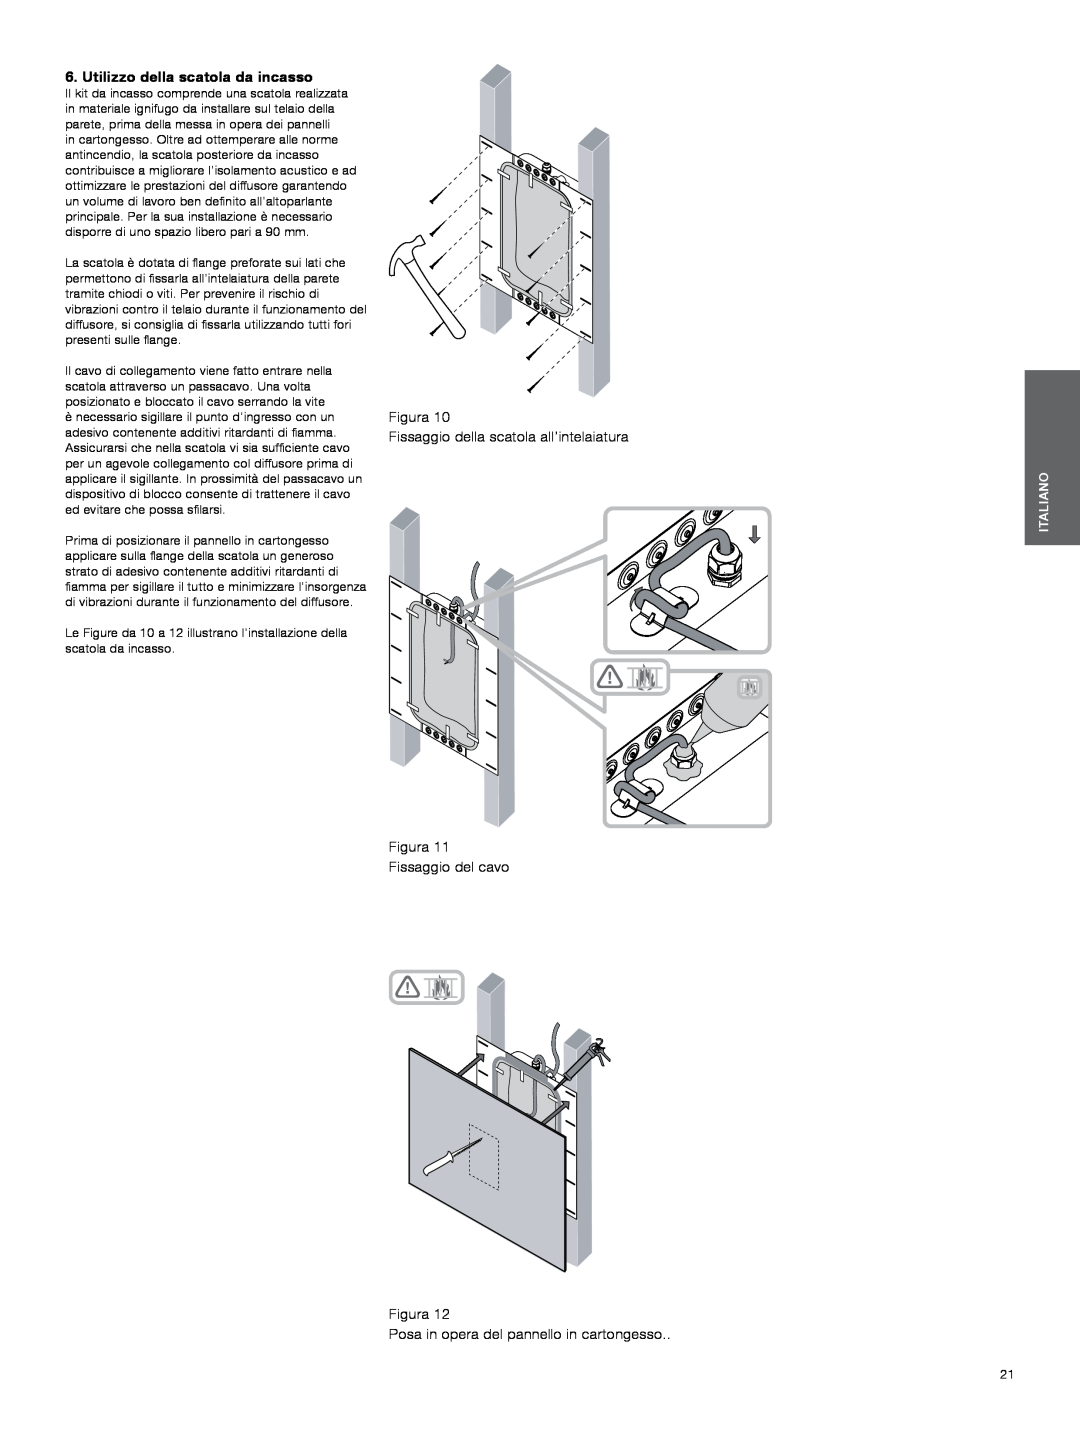 Bowers & Wilkins CWM3 manual Utilizzo della scatola da incasso, Figura Fissaggio della scatola all’intelaiatura, Italiano 